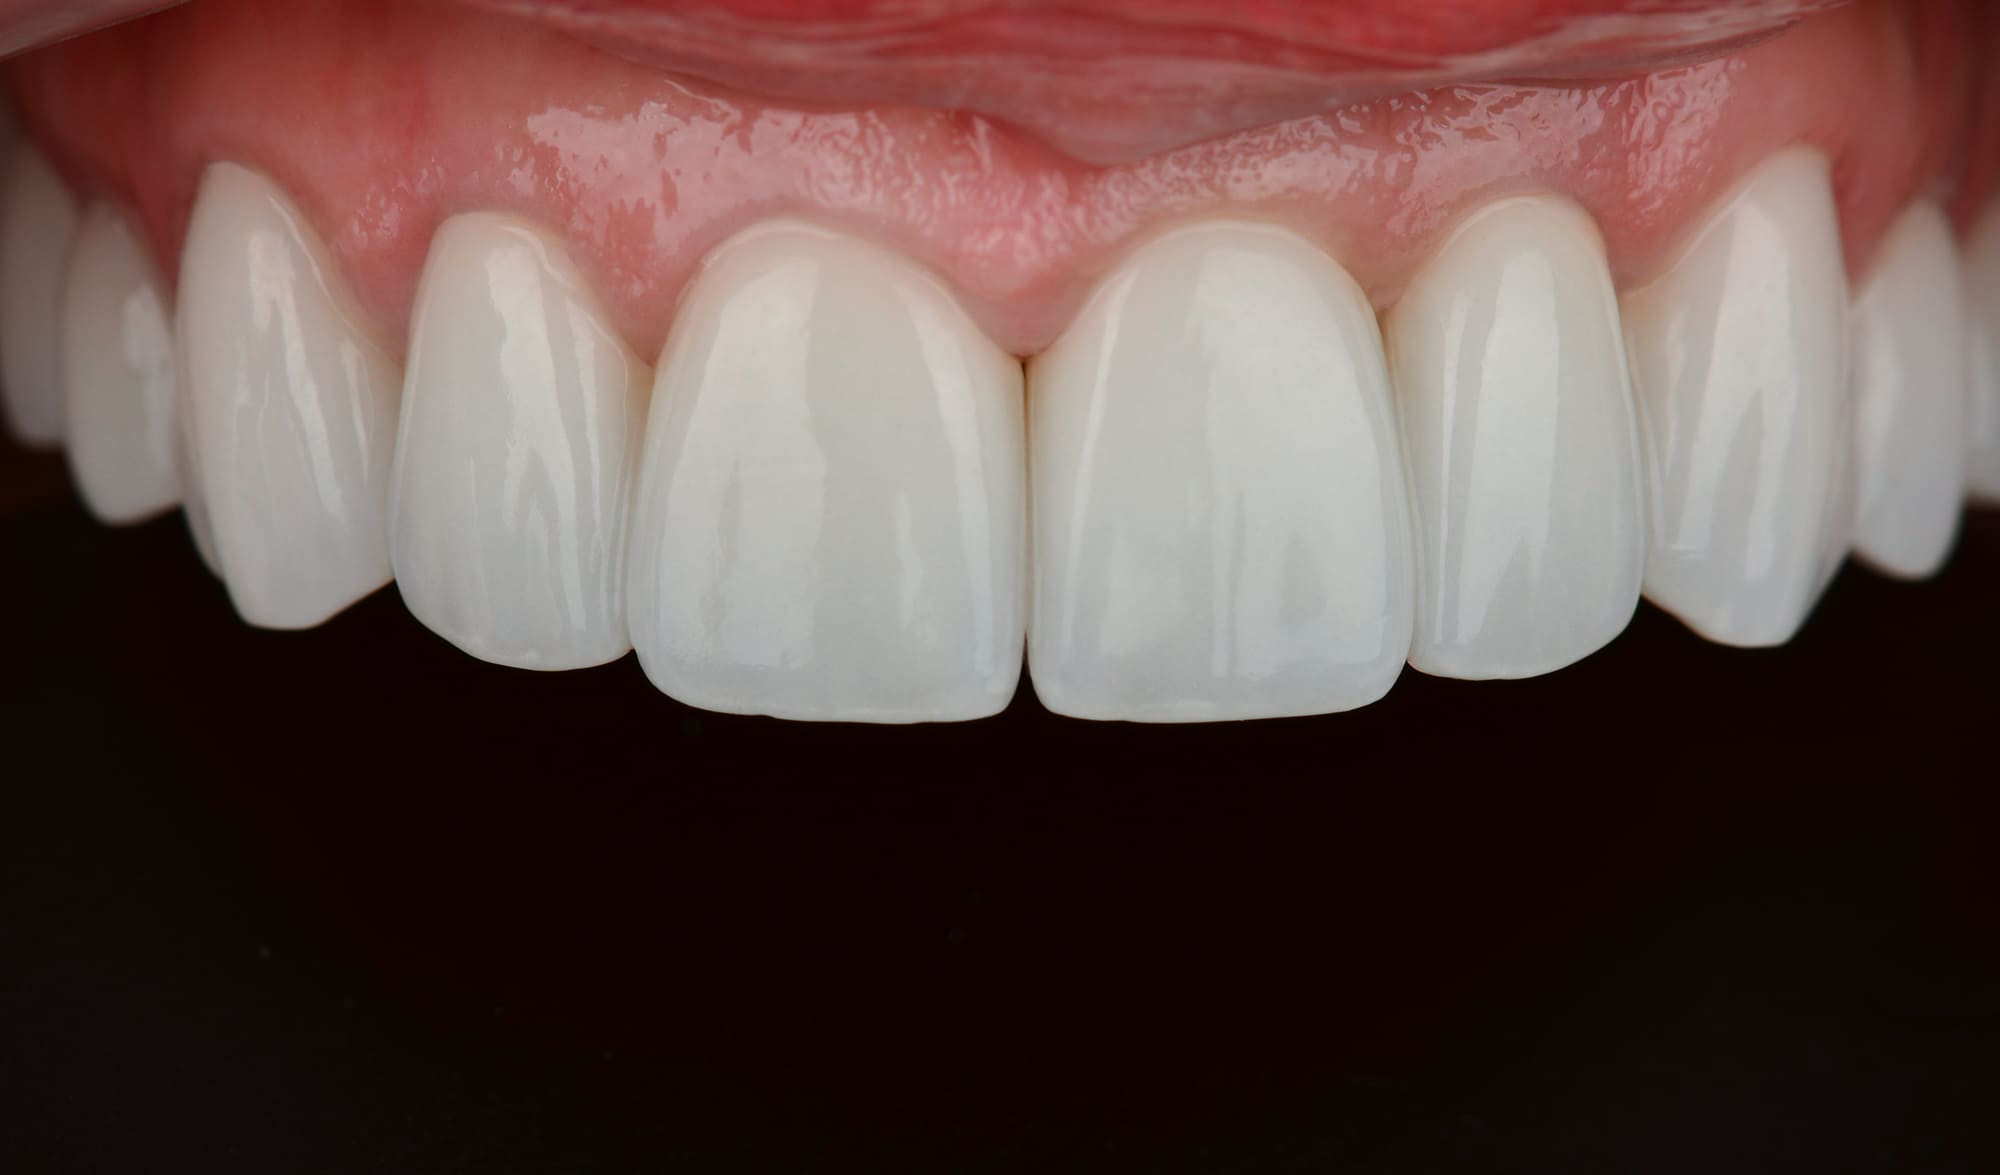 Протезирование осуществлялось в несколько этапов с примеркой прототипа будущих зубов.